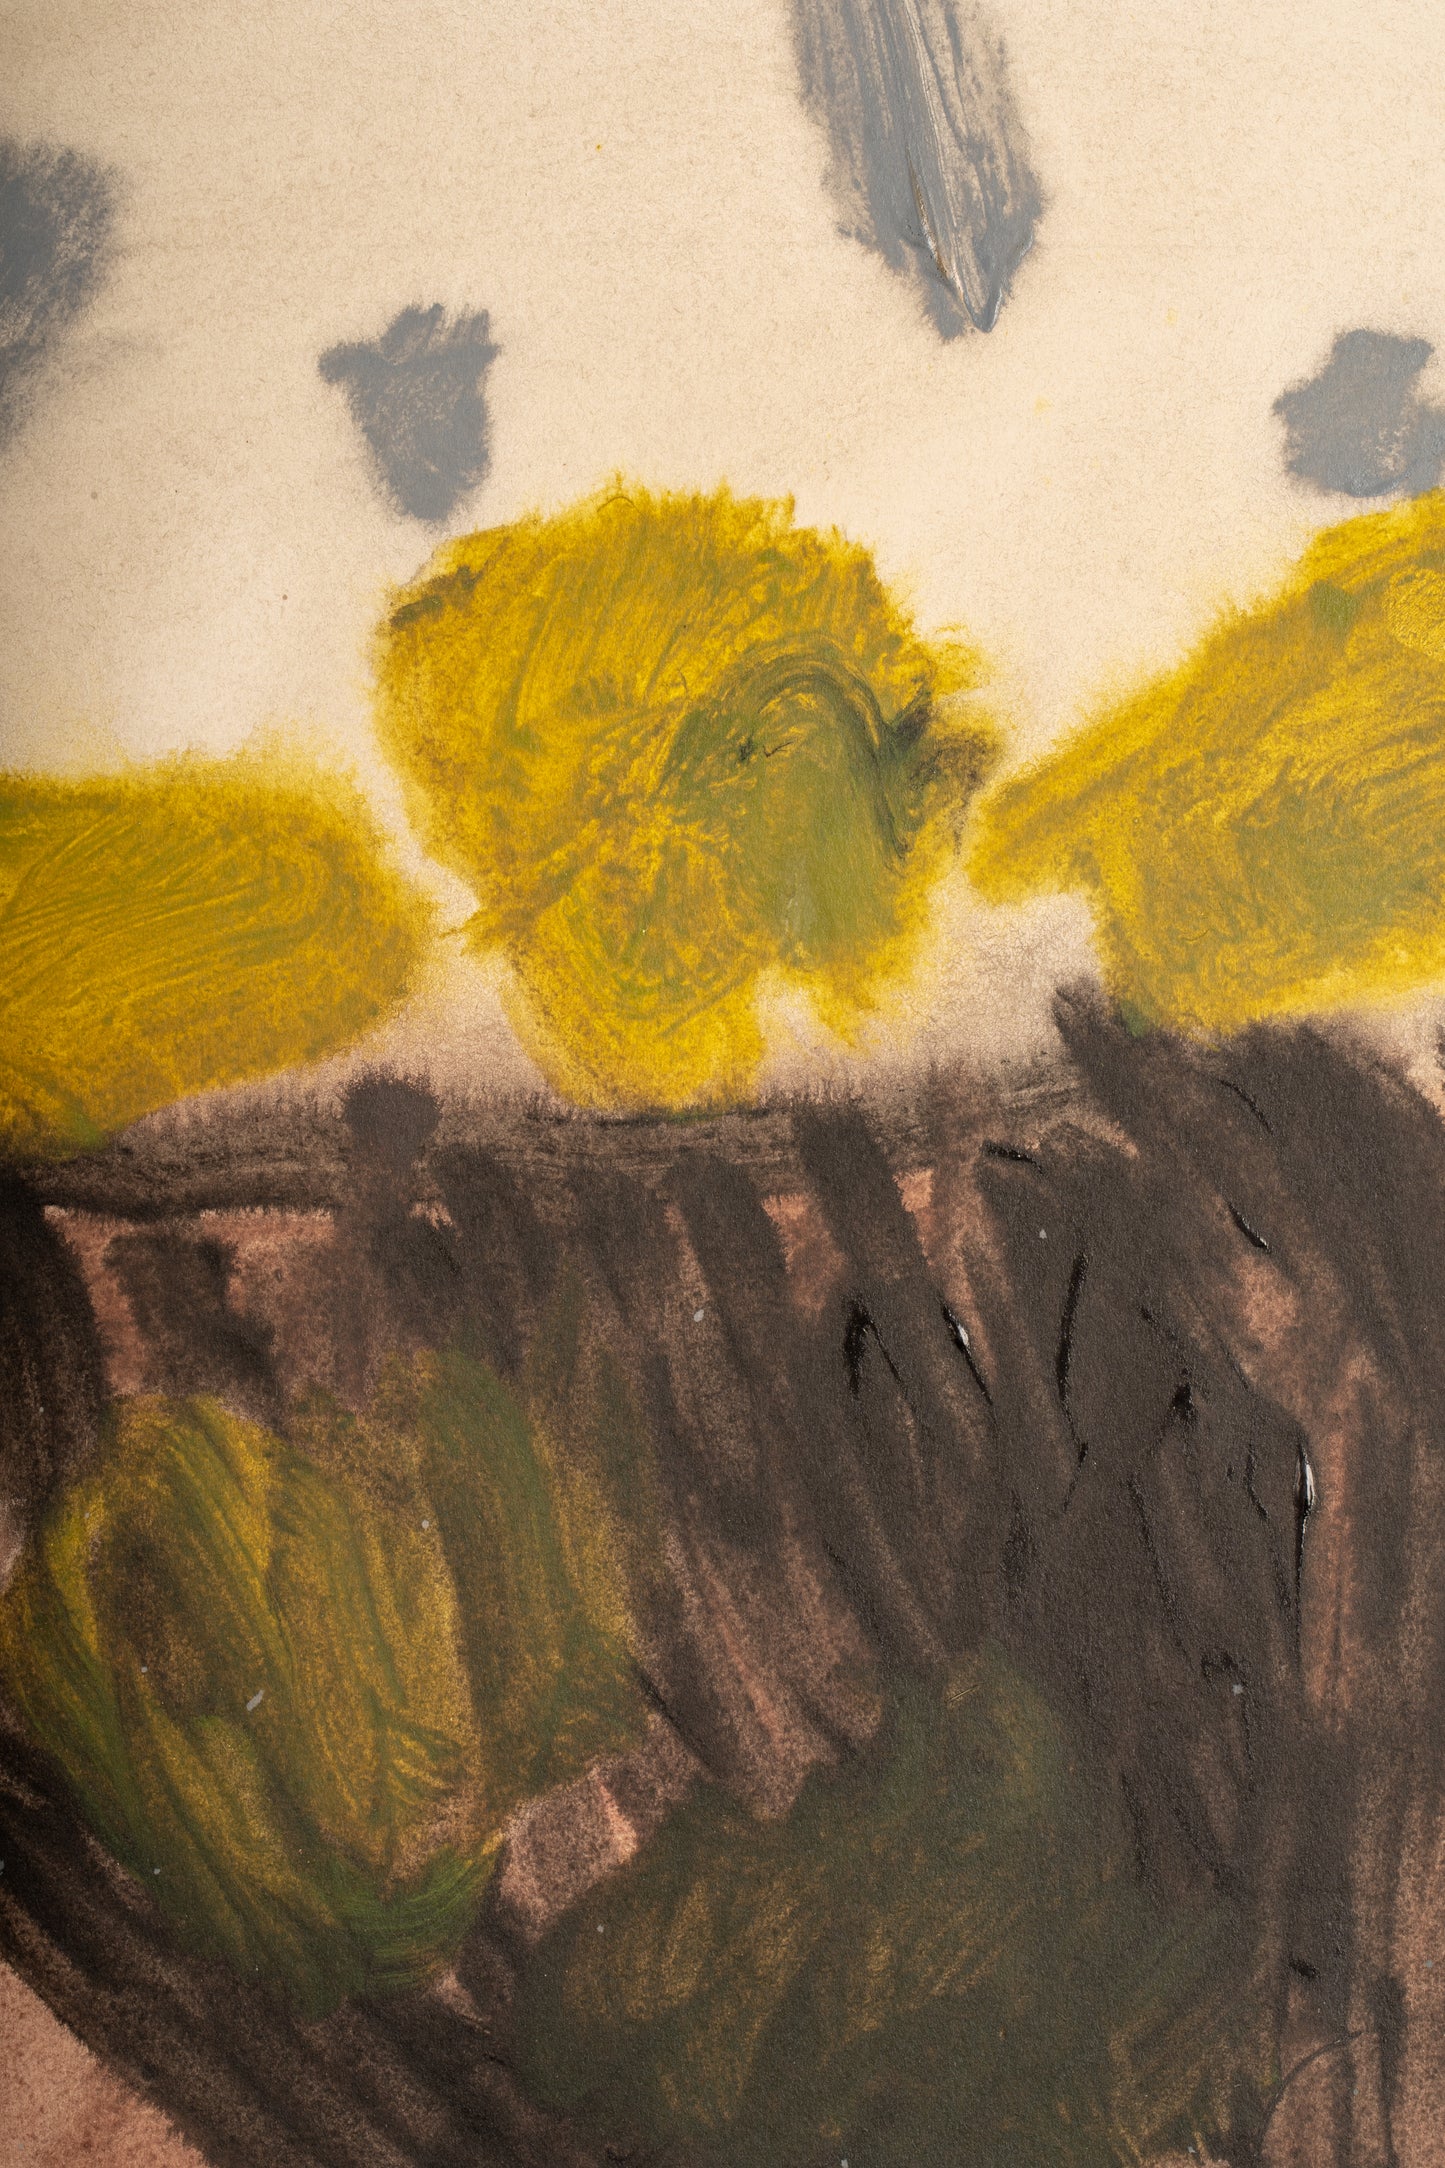 Maisie Pack 'Bowl of Lemons' Original Artwork